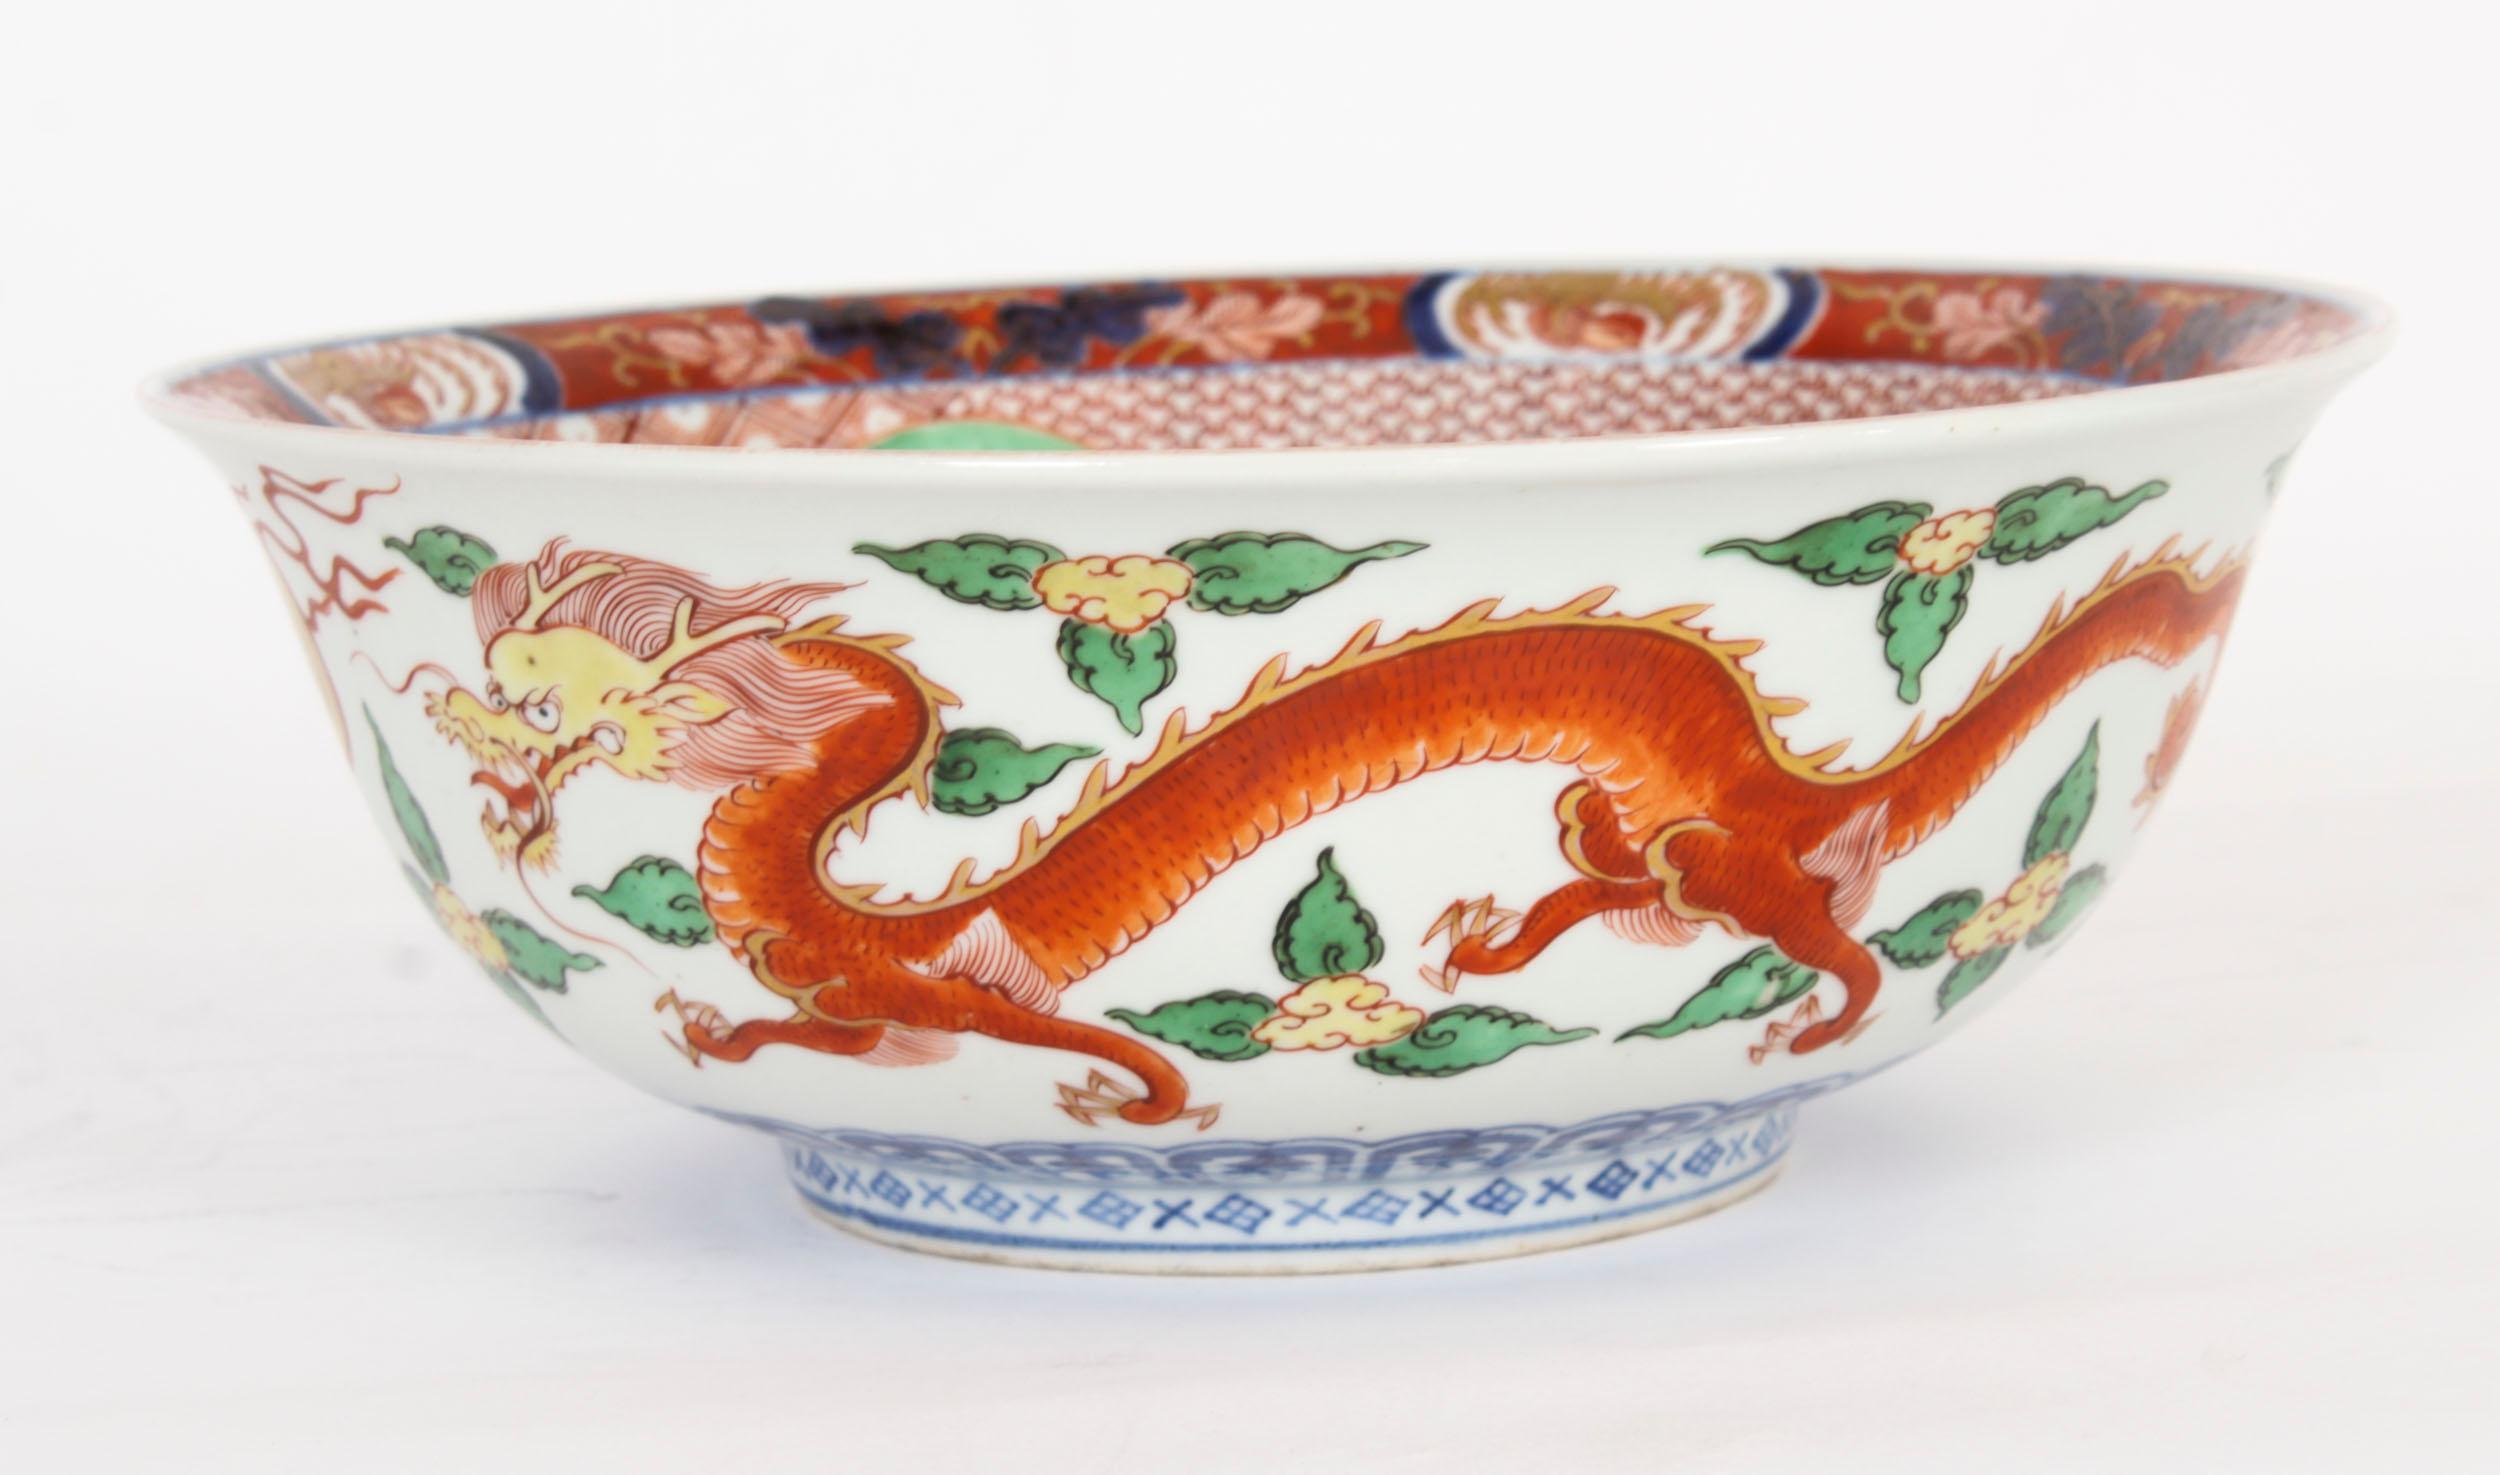 Un grand bol central en porcelaine d'exportation chinoise, datant d'environ 1890.

Le bol circulaire est de la palette Imari et présente une décoration émaillée avec des panneaux de dragons, de kylins, de chauves-souris et de phénix dans des